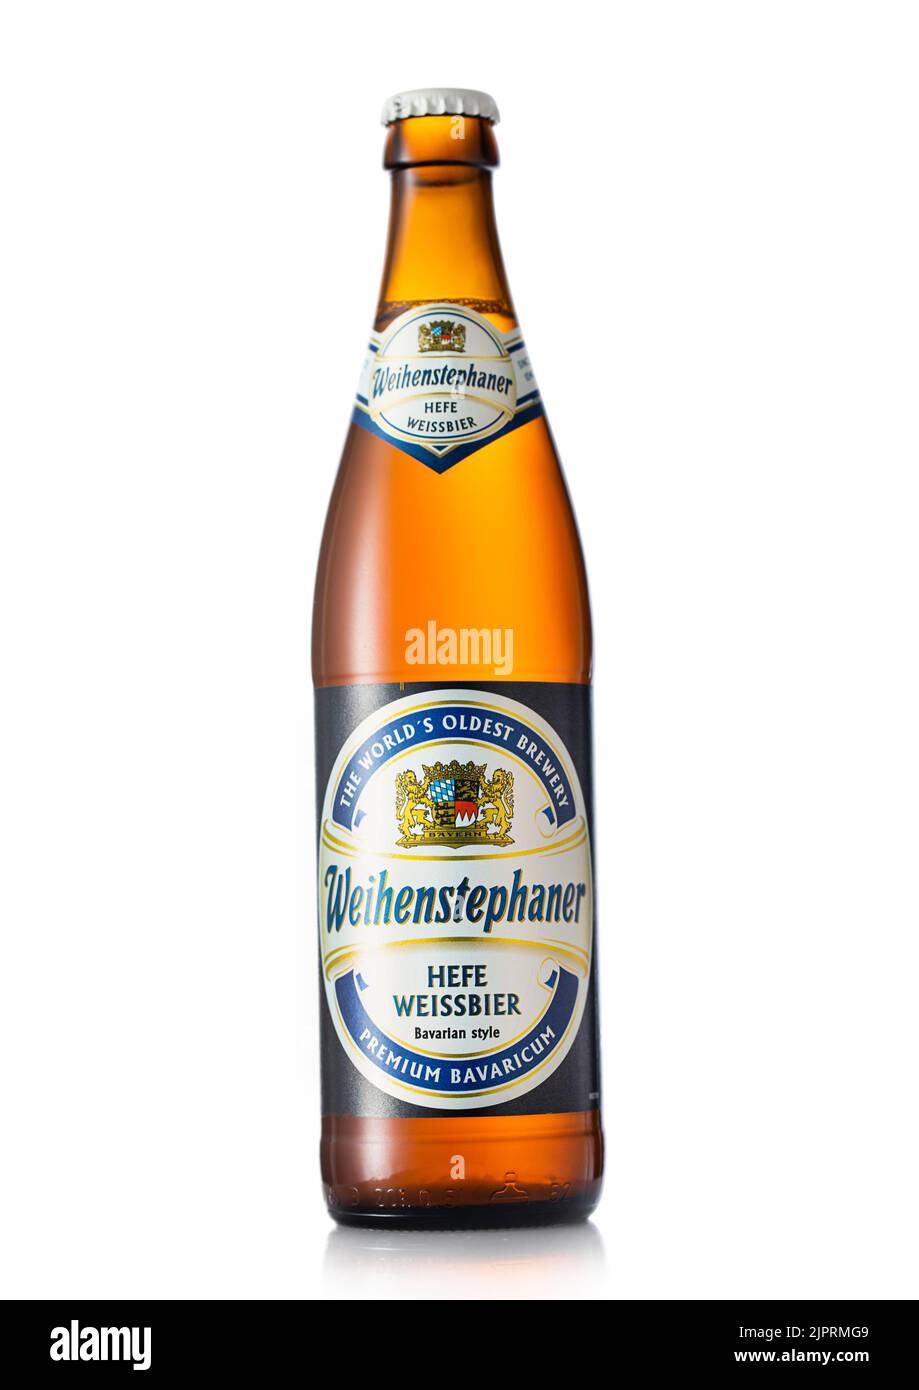 LONDON, UK - JUNE 22, 2022: Bottle of Weihenstephaner wheat beer on white. Stock Photo